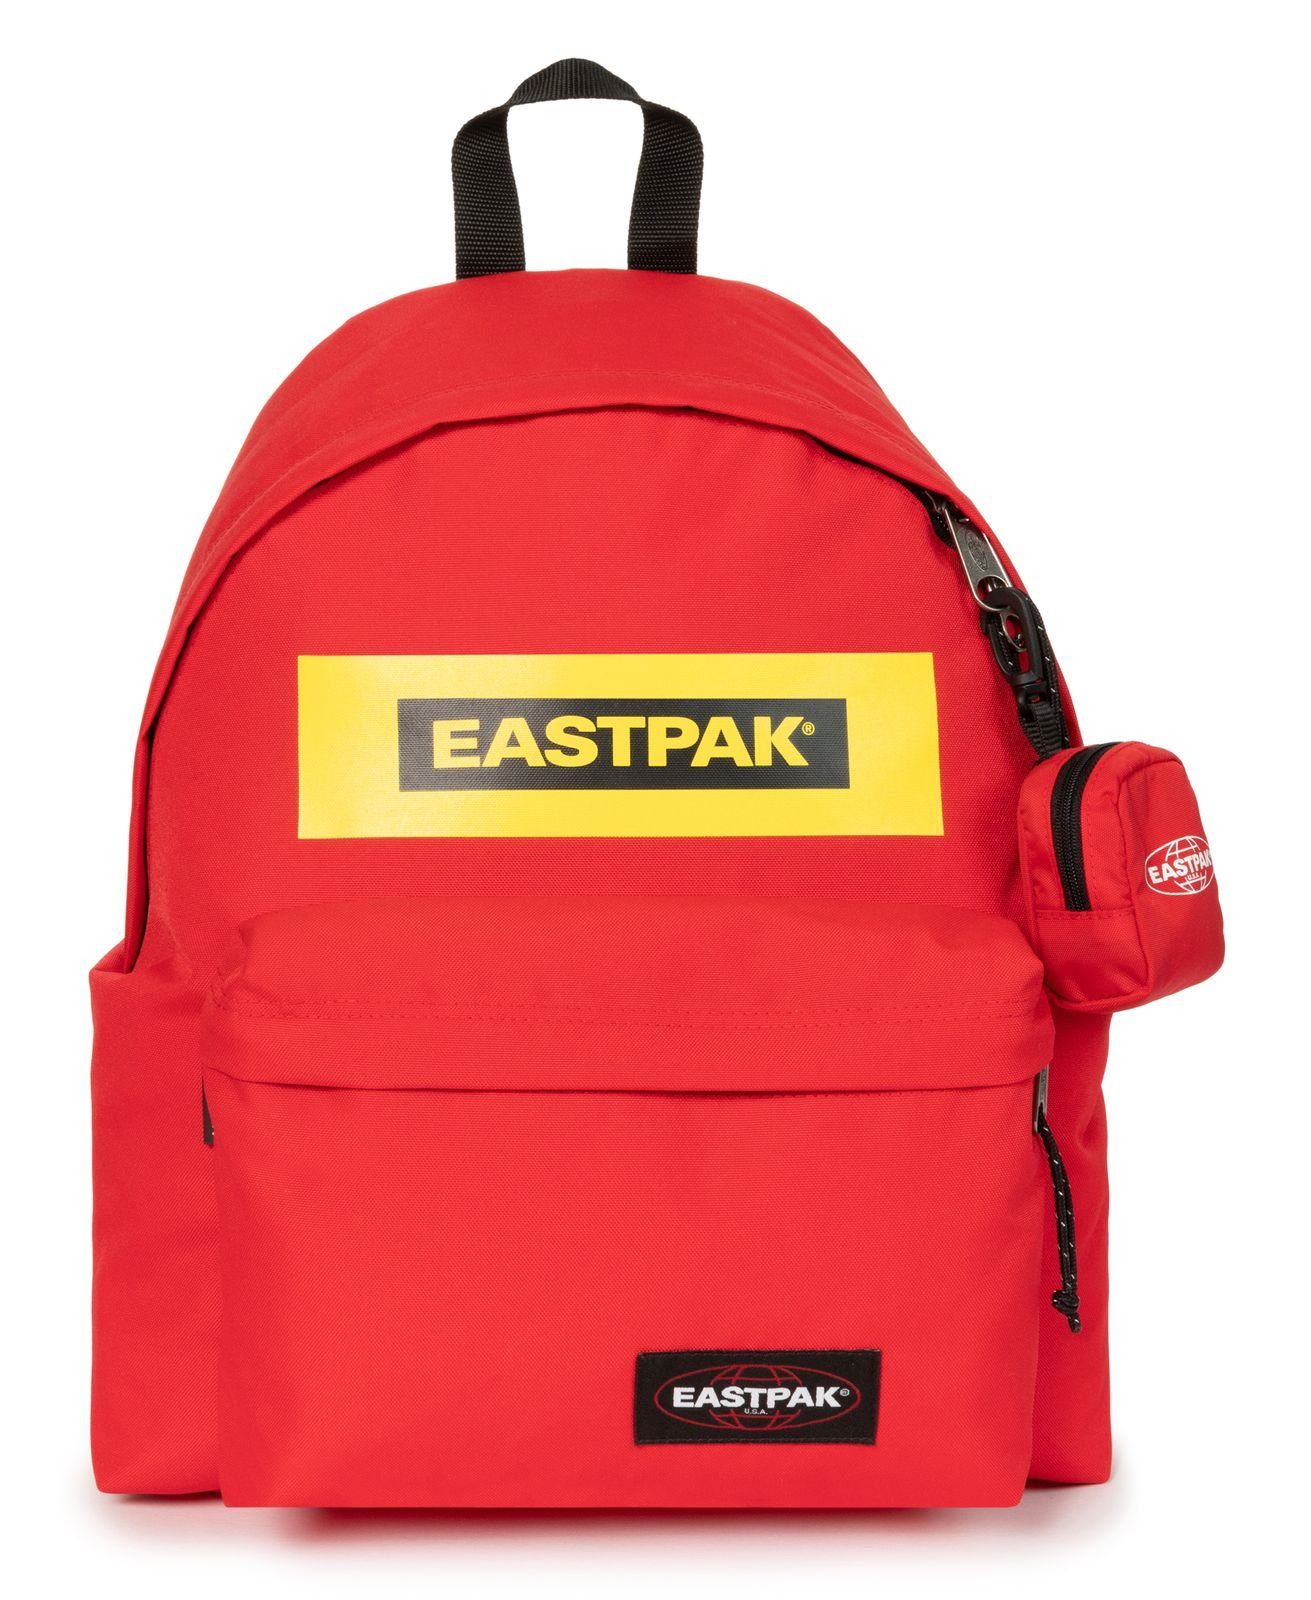 Eastpak Rucksack online kaufen | OTTO